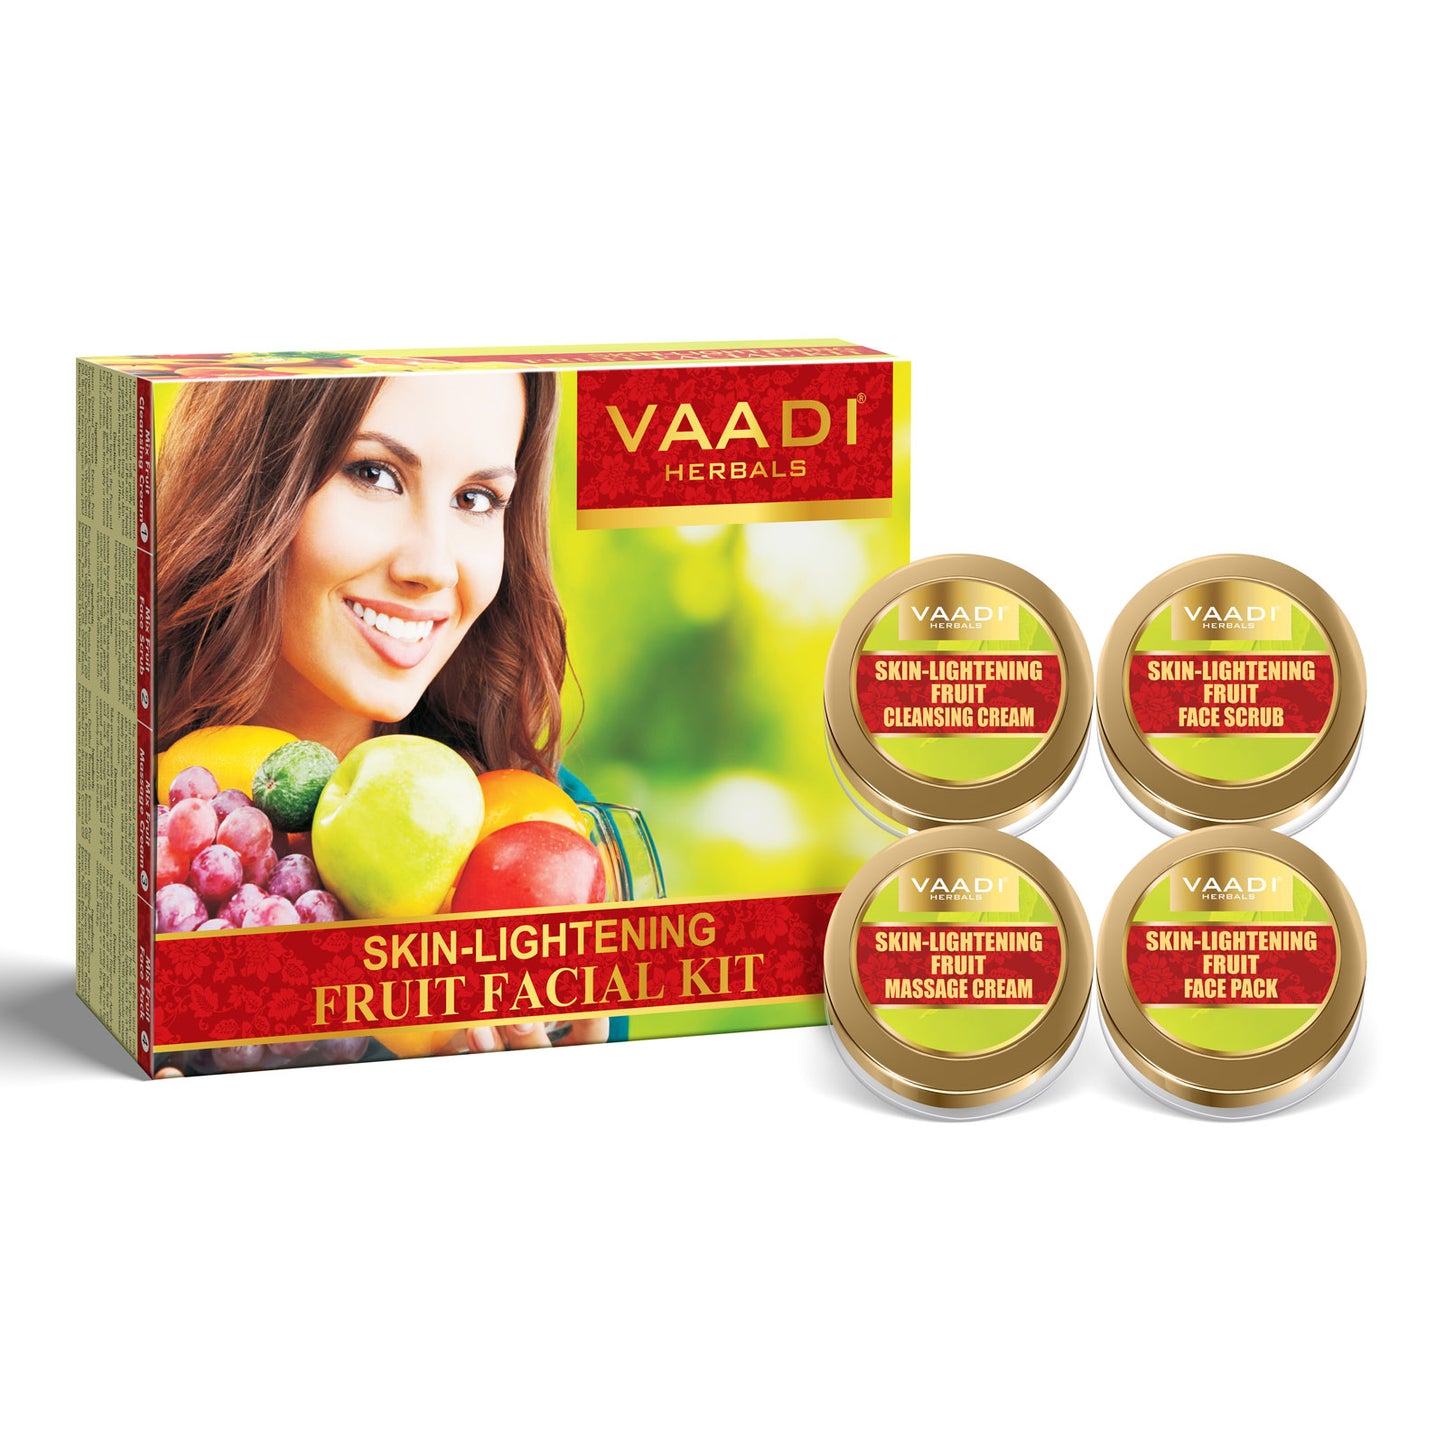 Skin-Lightening Fruit Facial Kit (110 gms)